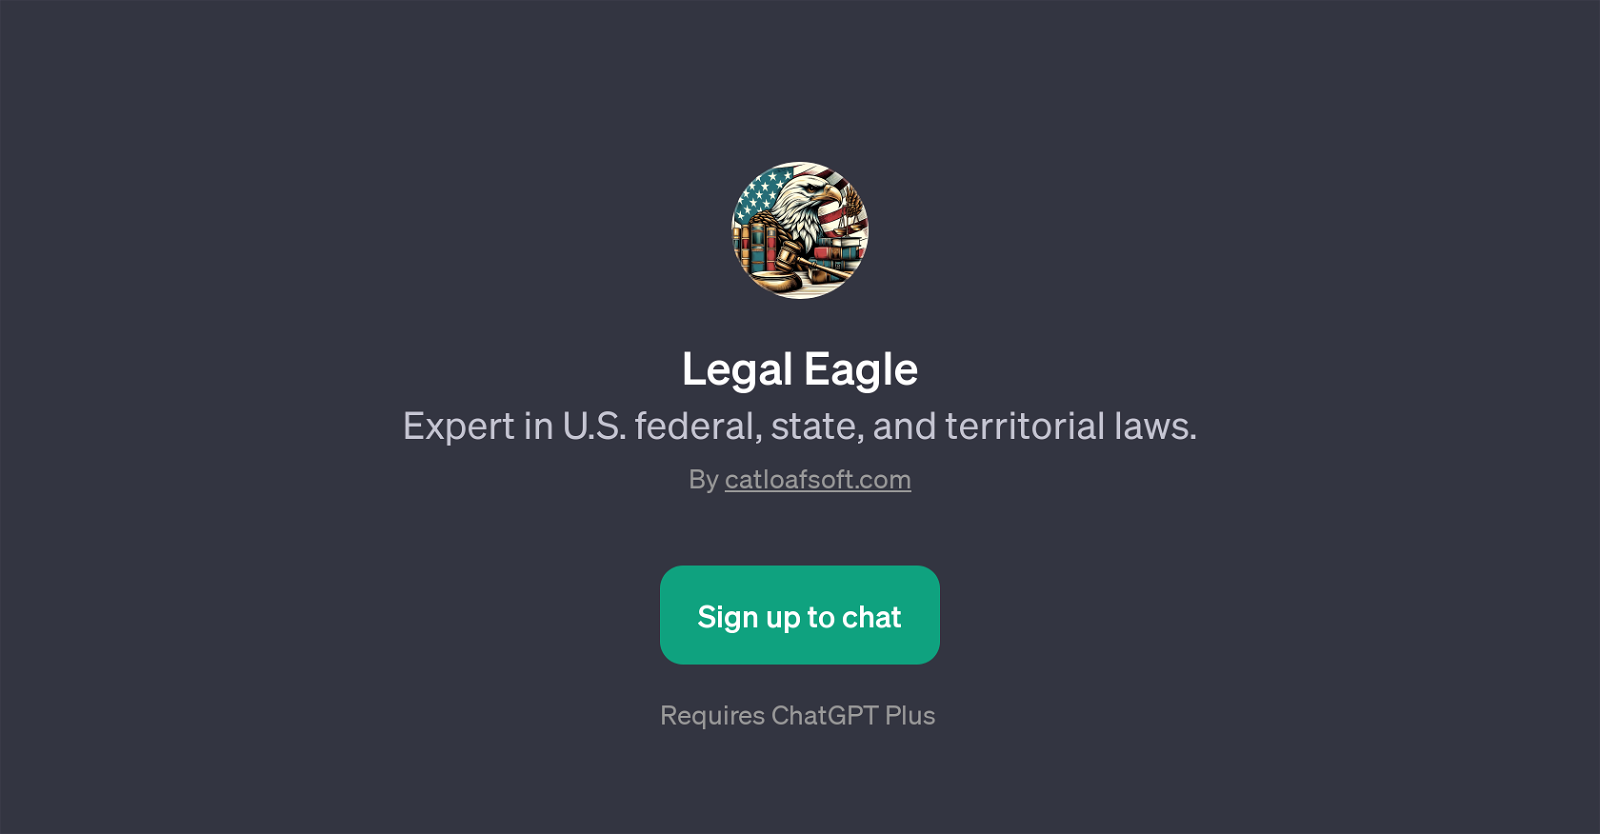 Legal Eagle website